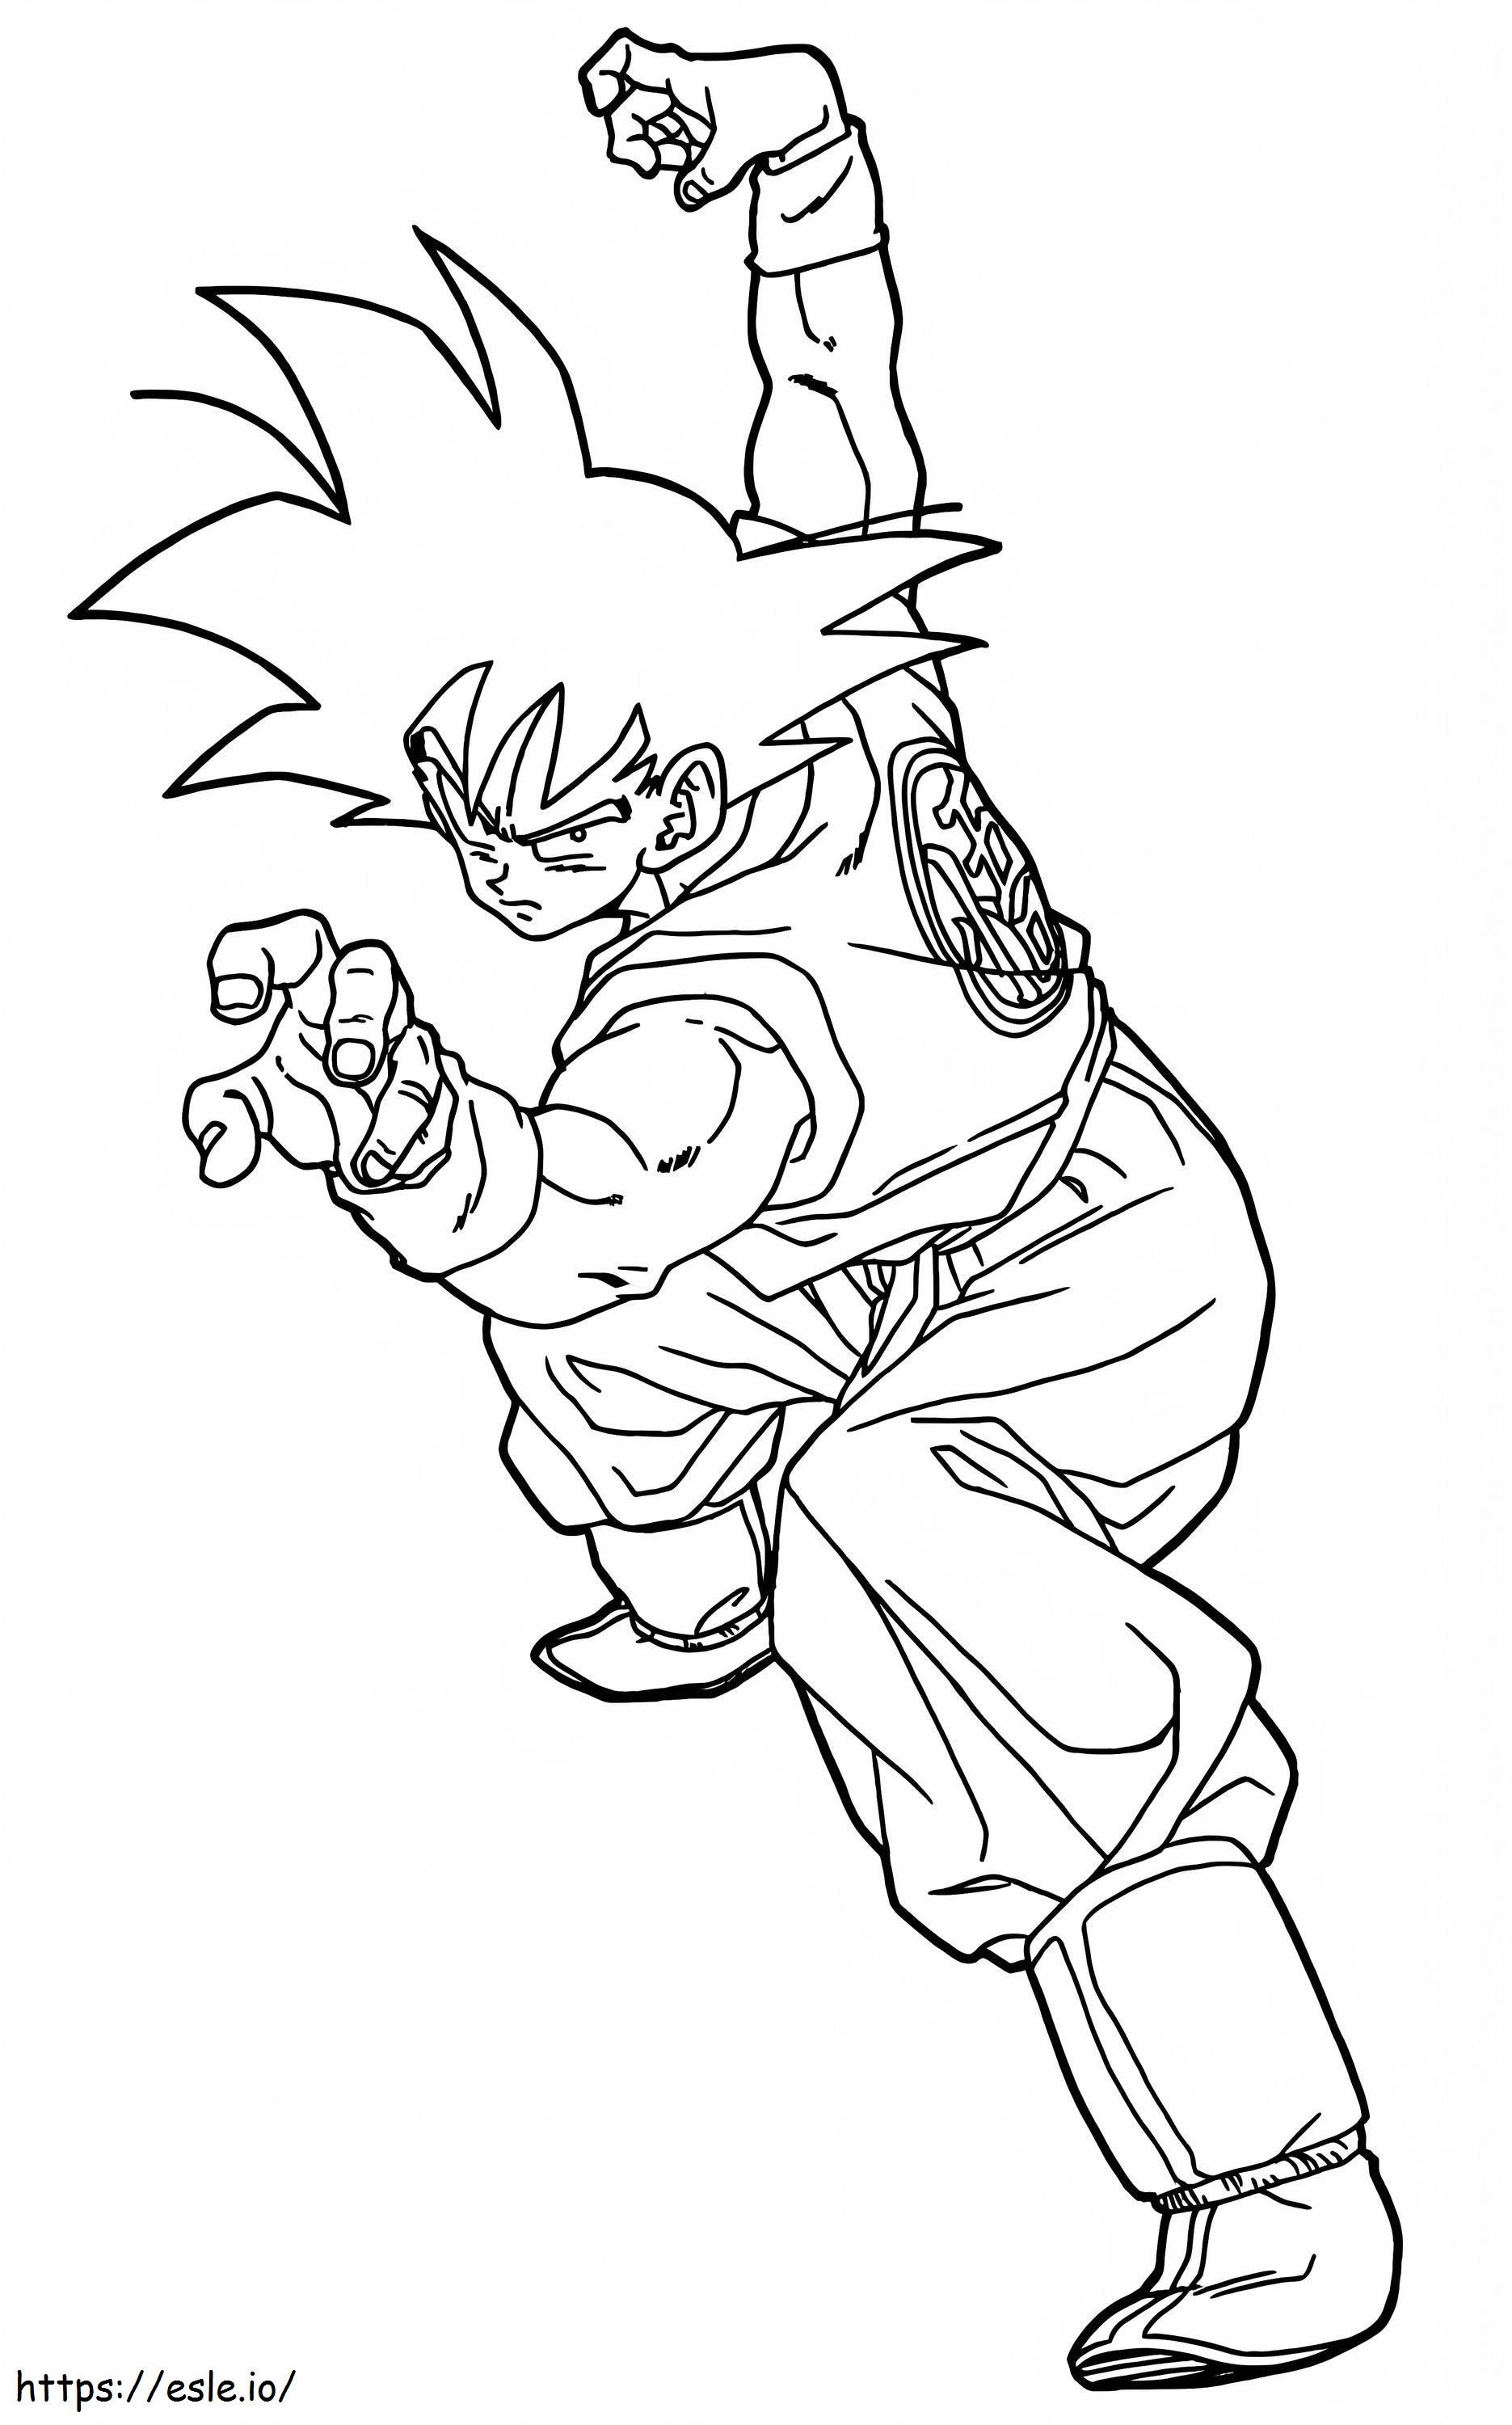 Son Goku vechthouding kleurplaat kleurplaat